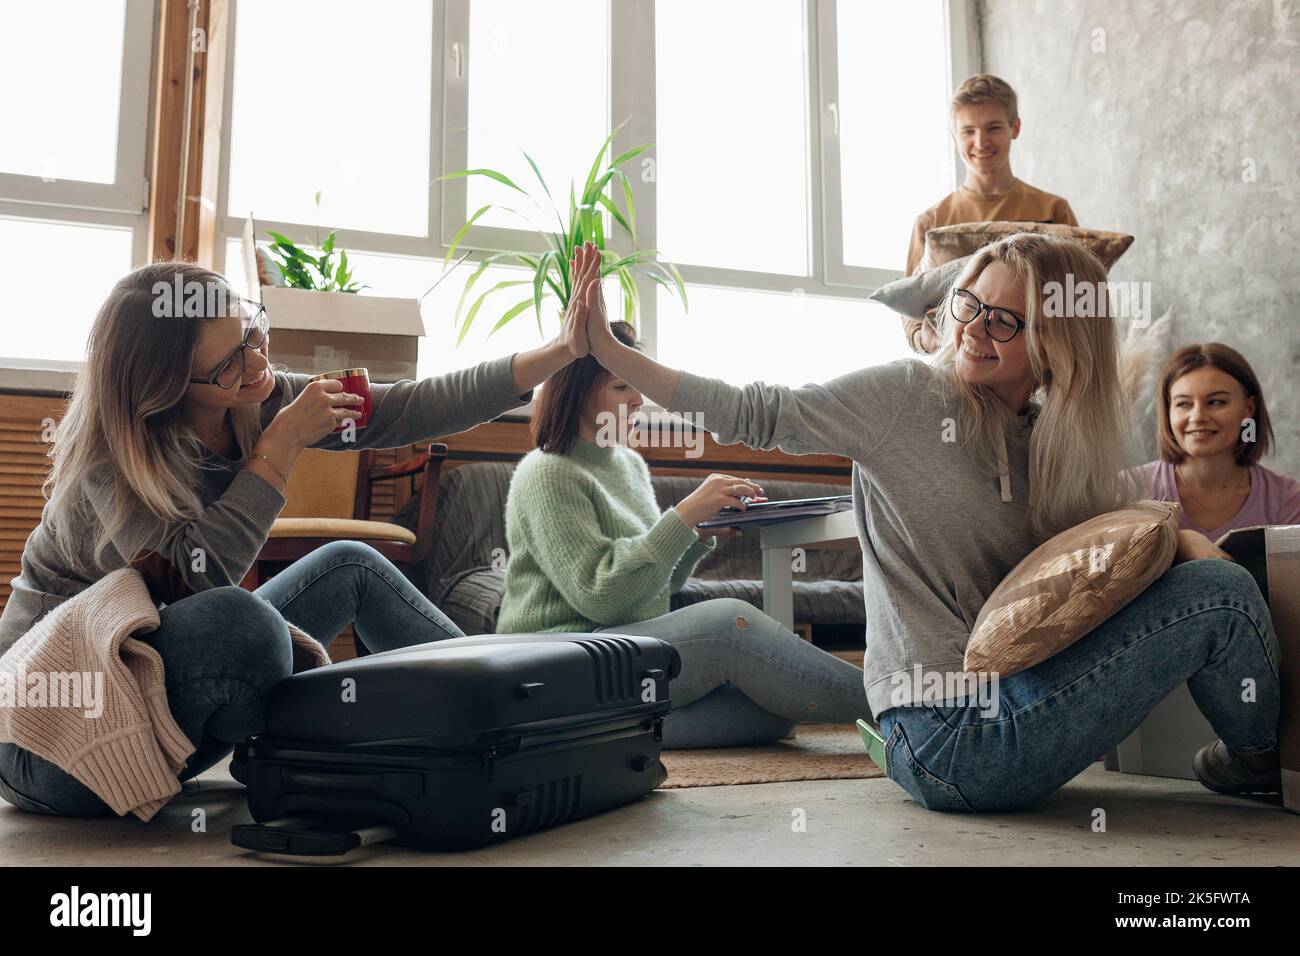 Lächelnde, energische Schülerin, die fünf auf dem Boden gibt, während sie das Gepäck mit Sachen im Wohnzimmer packt und eine Freundin zeigt Stockfoto